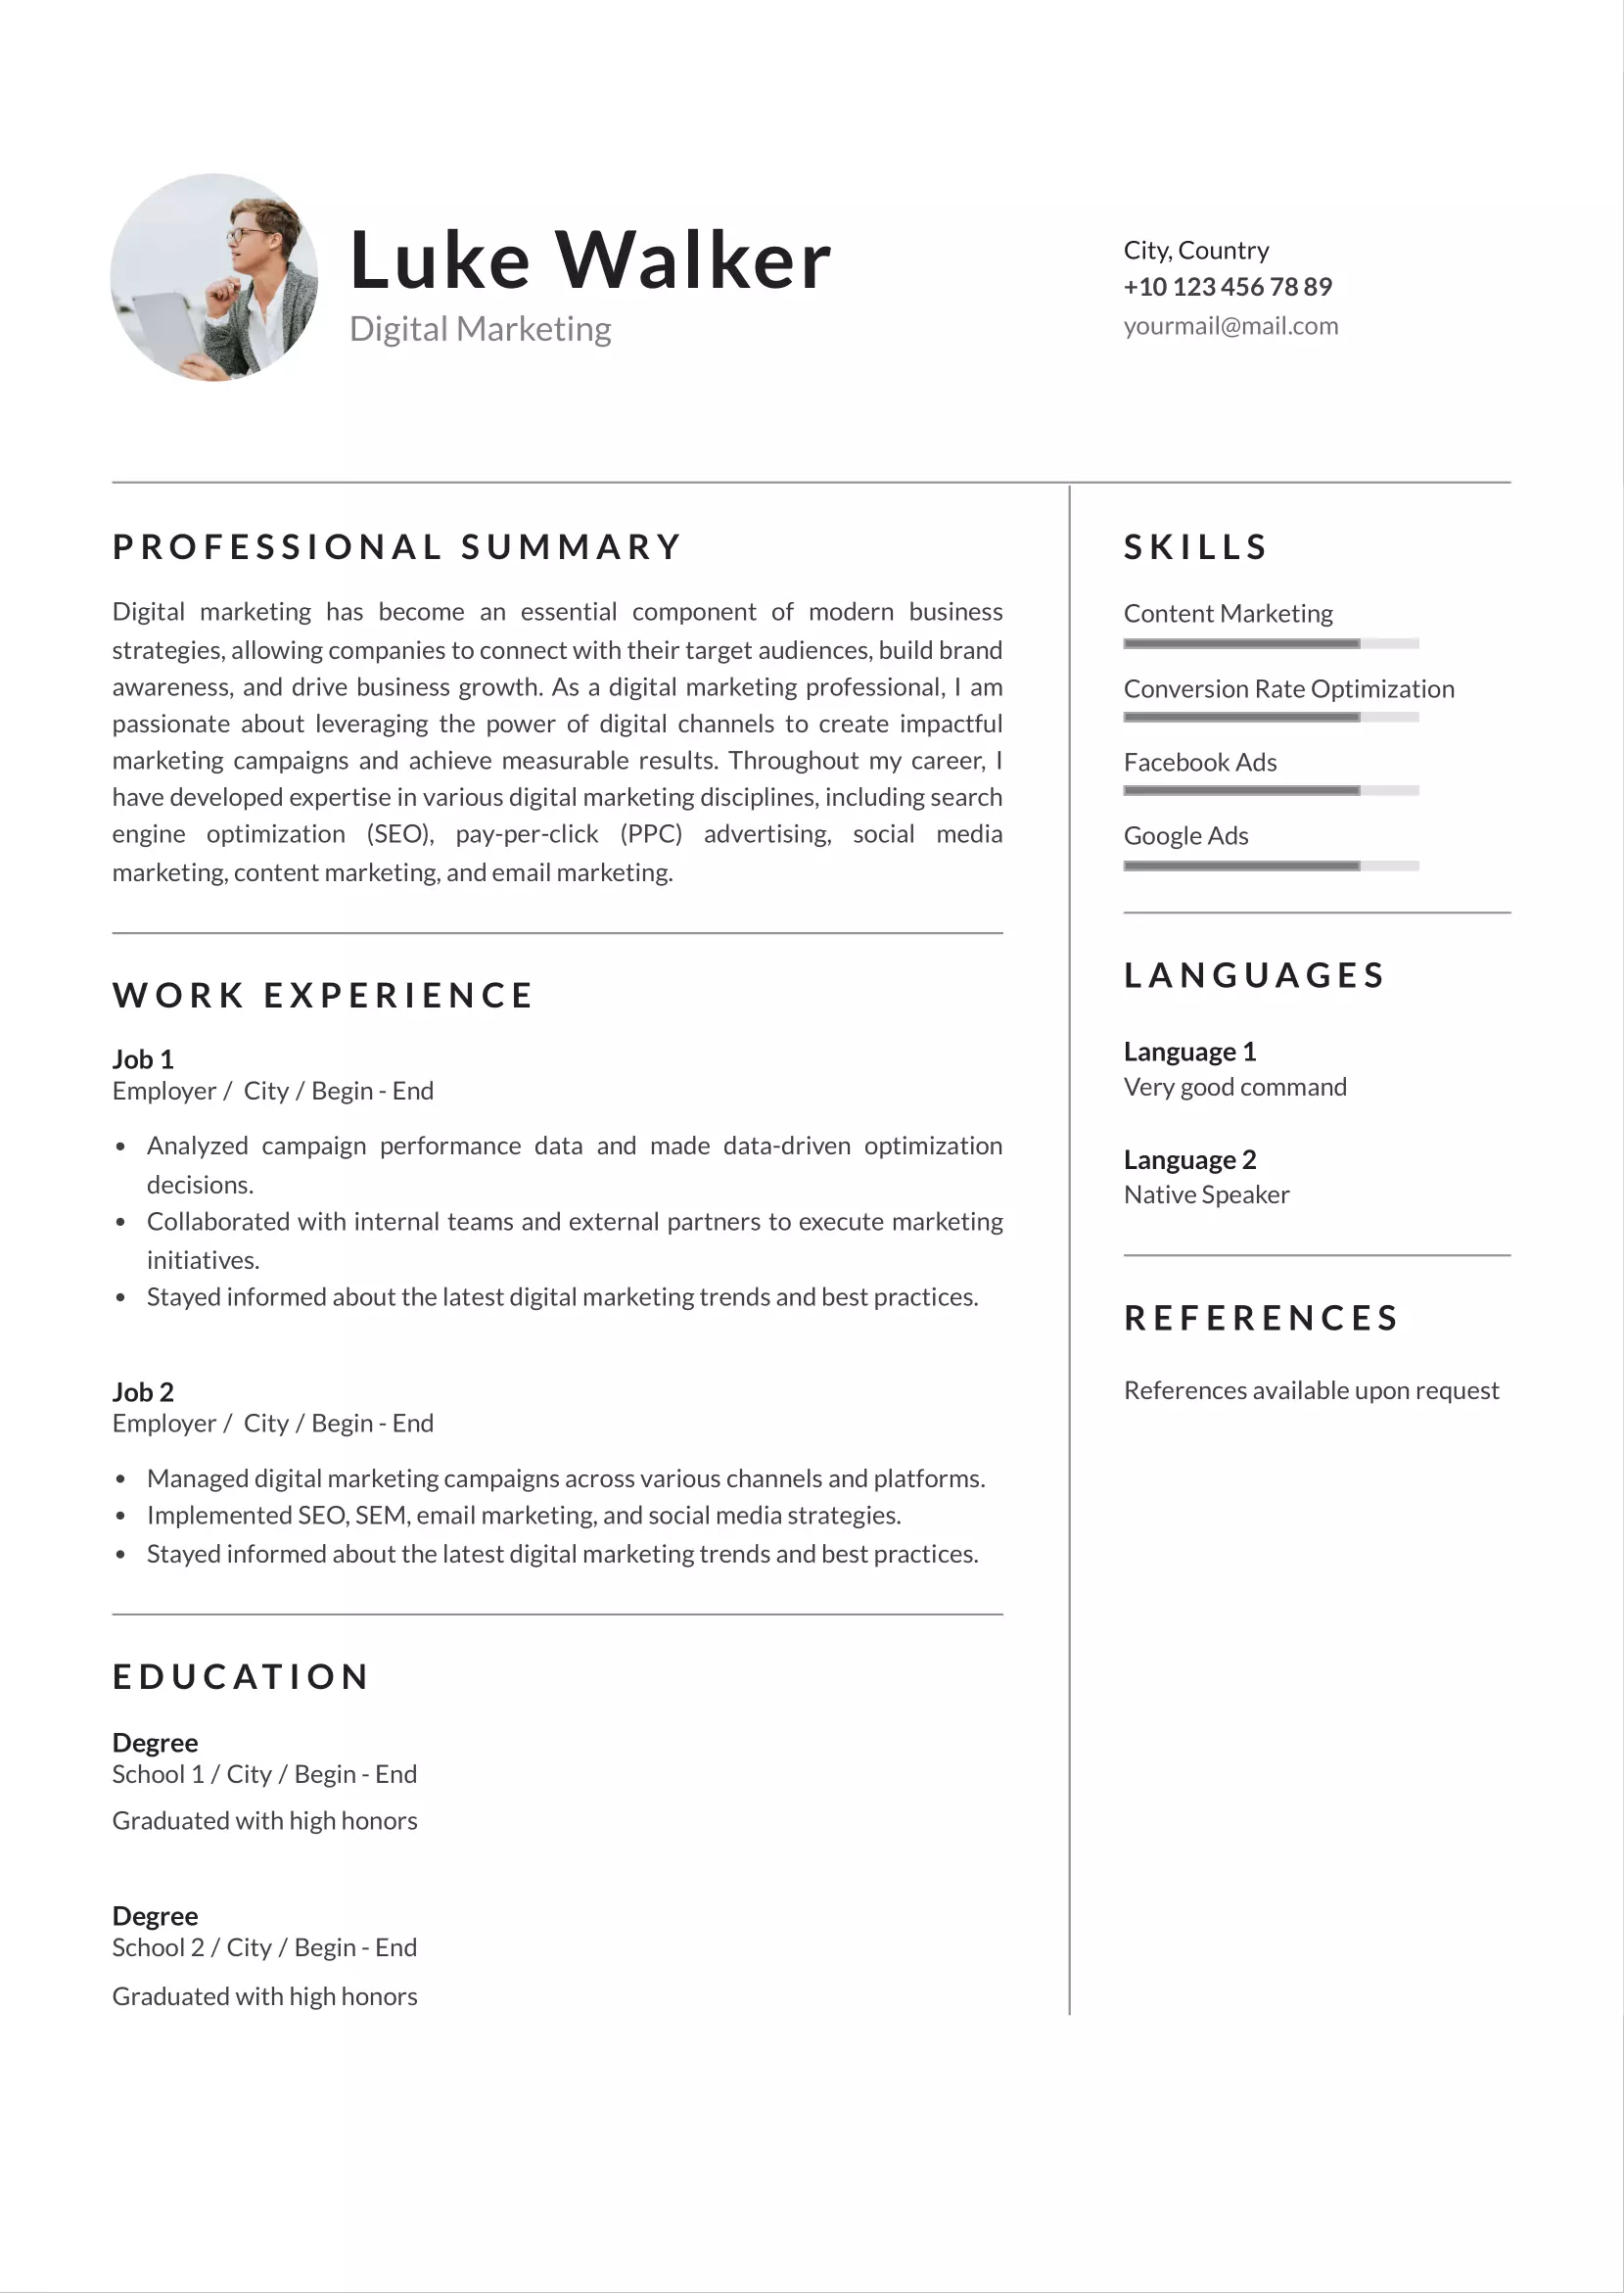 Digital marketing resume CV